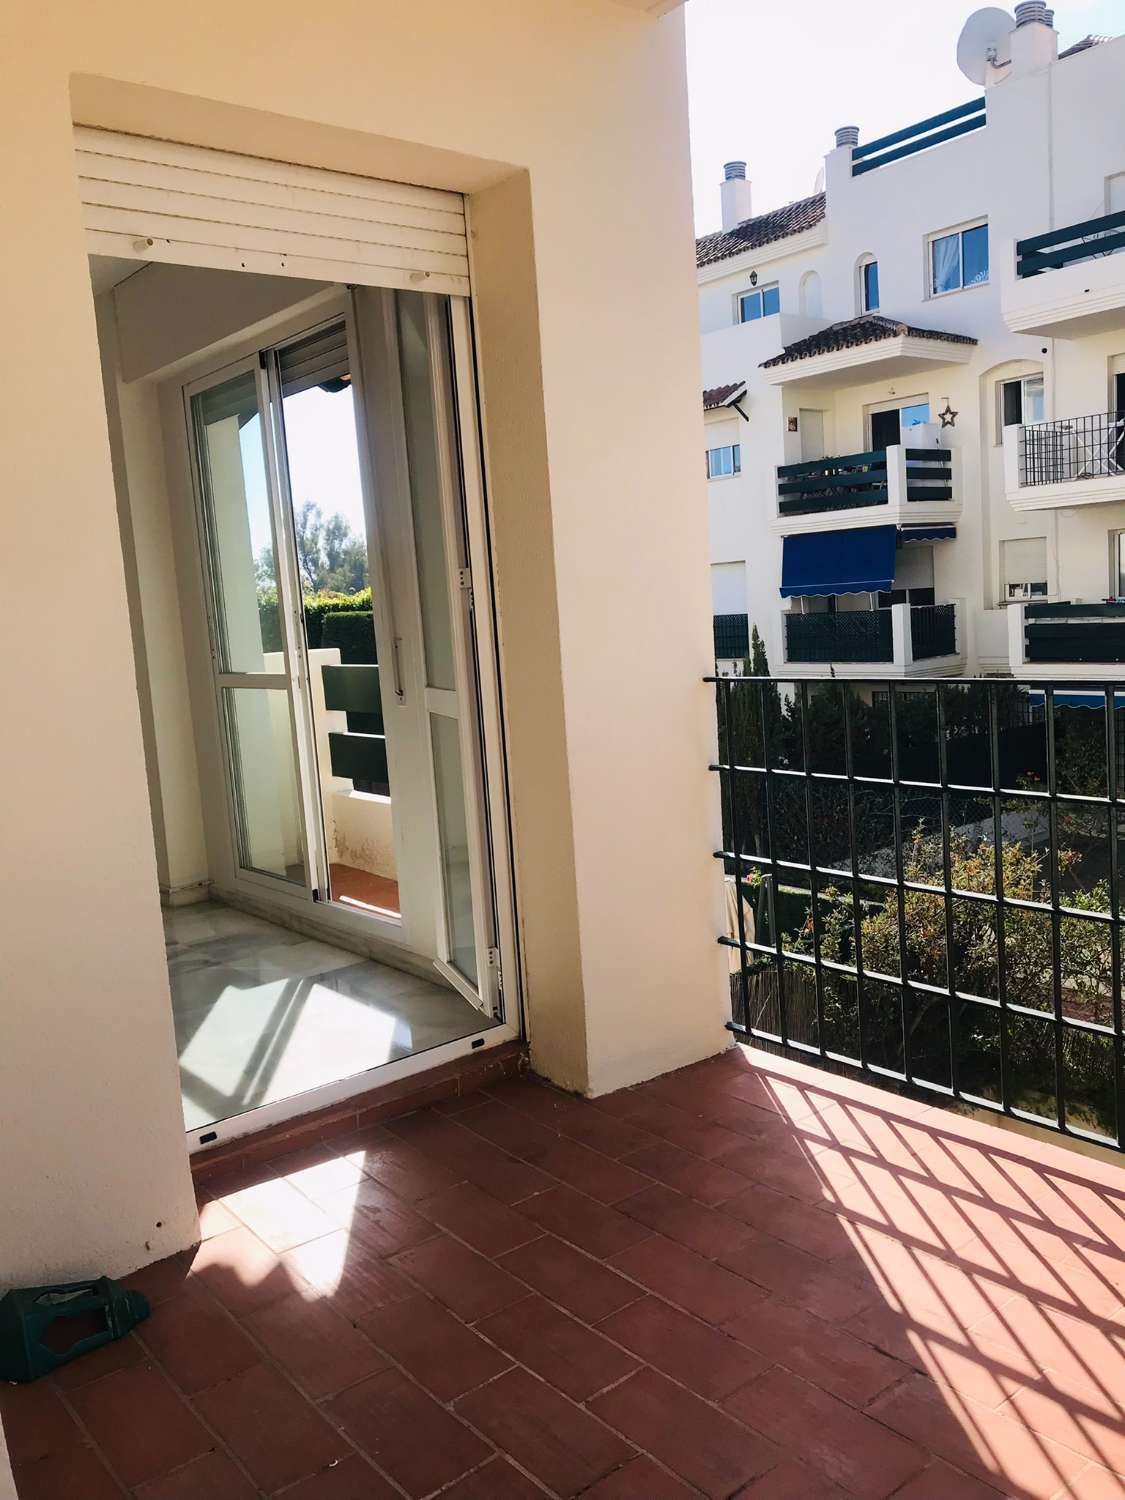 Viehättävä asunto myytävänä. Kätevä sijainti lähellä Puerto Banusta, Marbella.